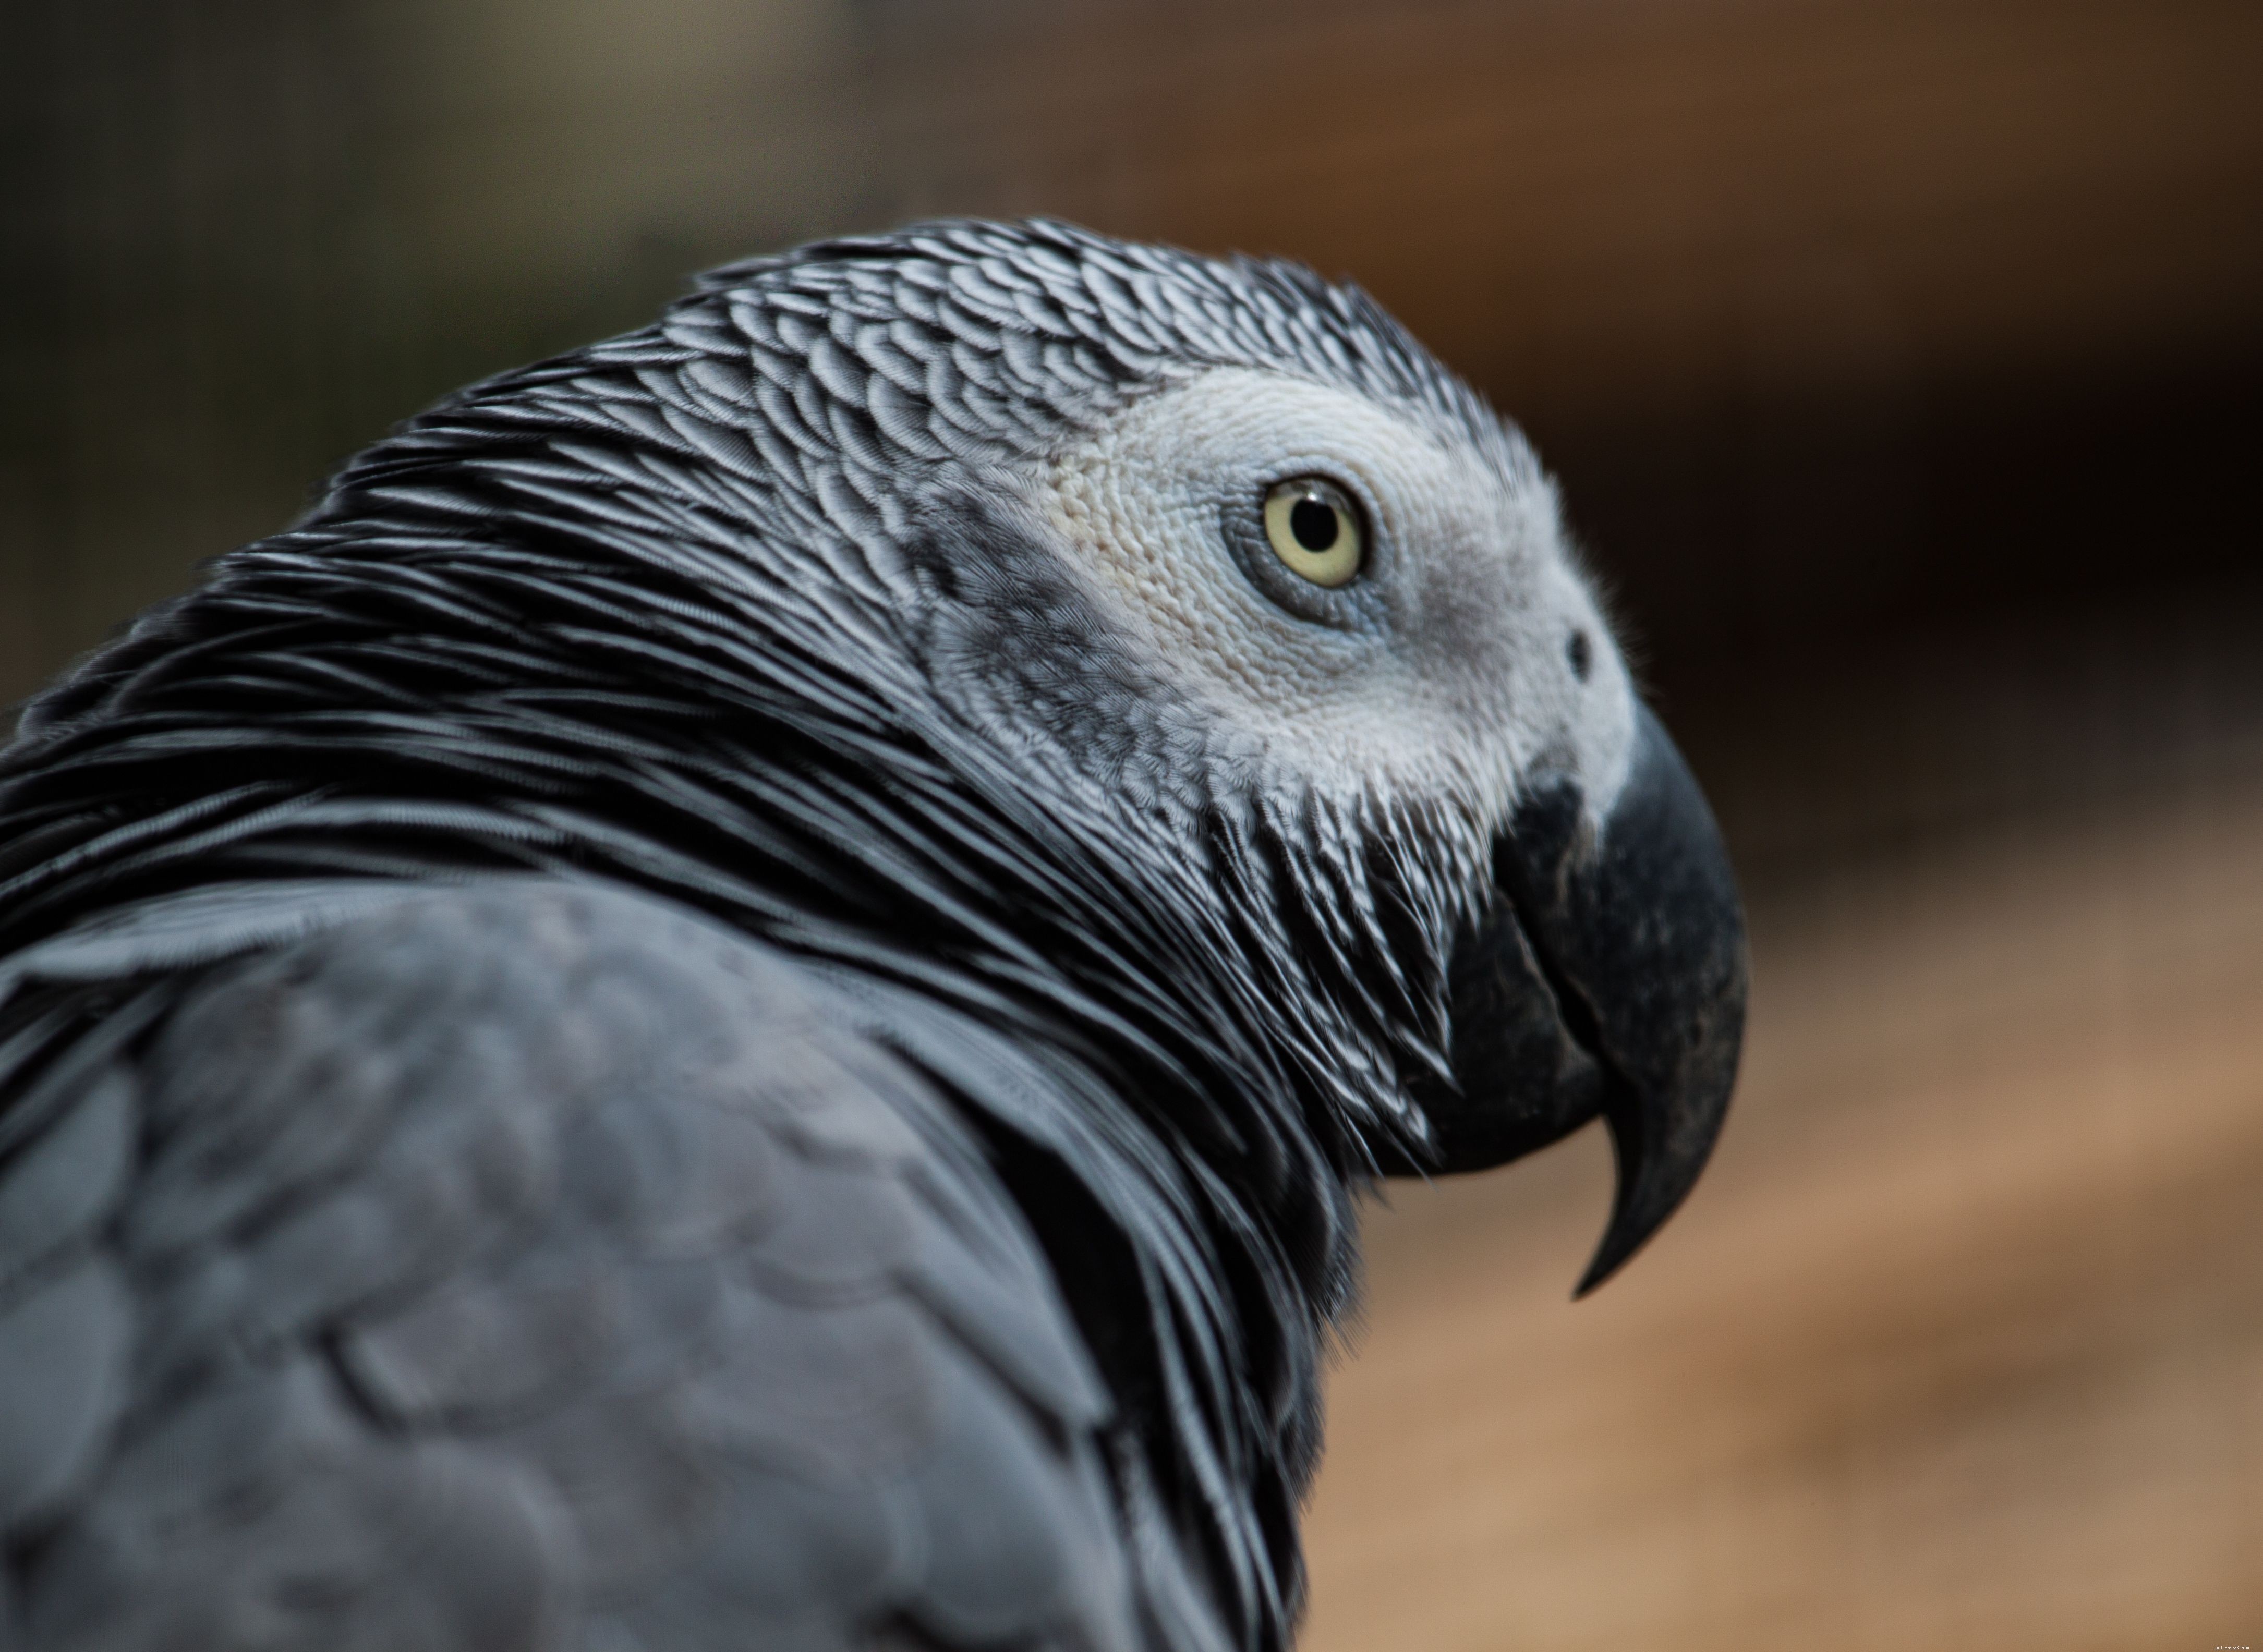 Fakta om afrikanska grå papegojor